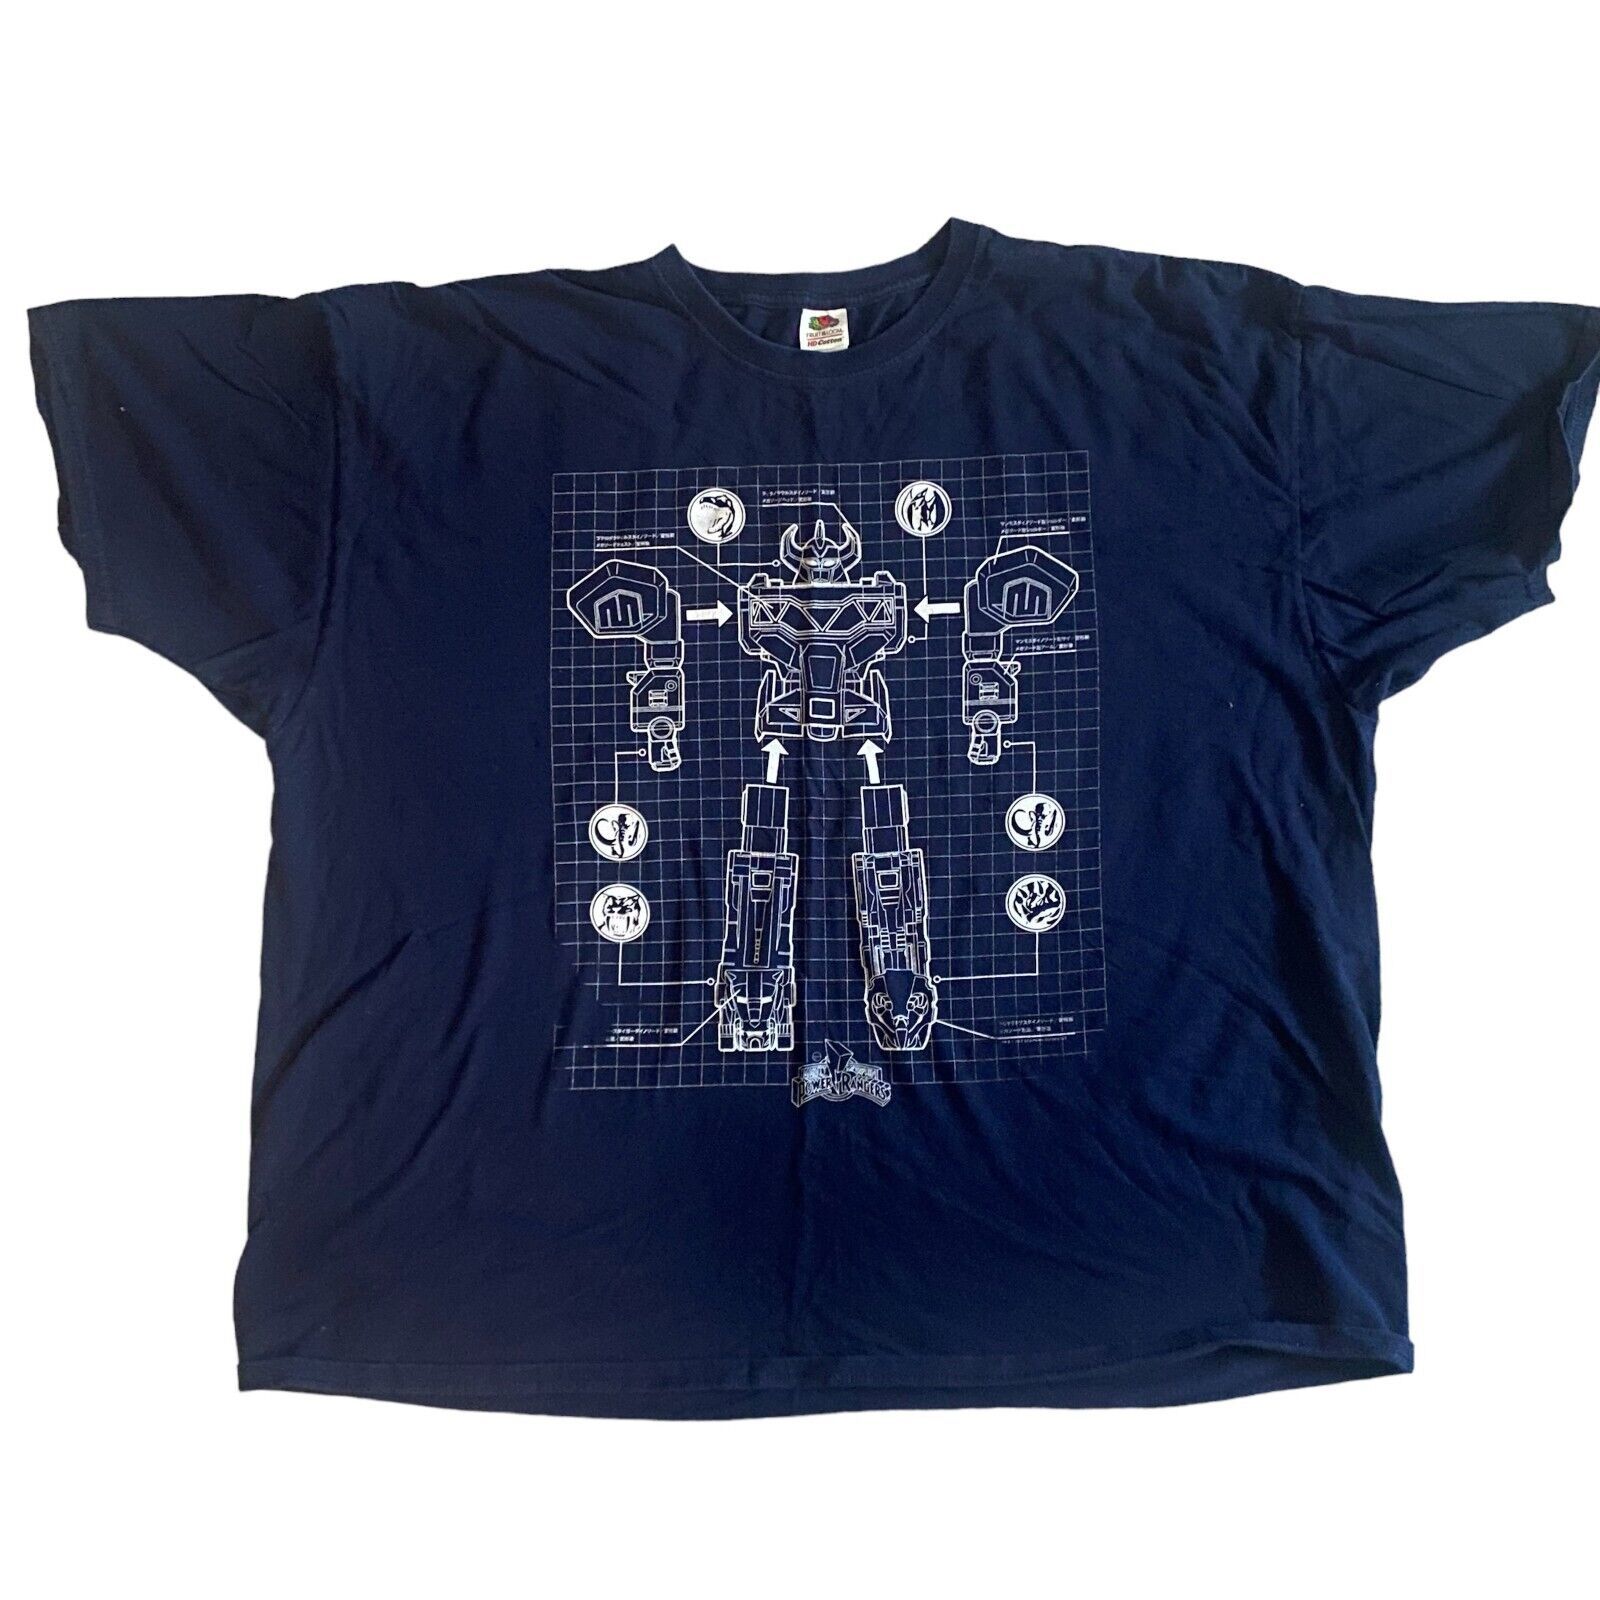 Mighty Morphin Power Rangers Navy Blue Men's T-shirt Size 3XL - £6.05 GBP